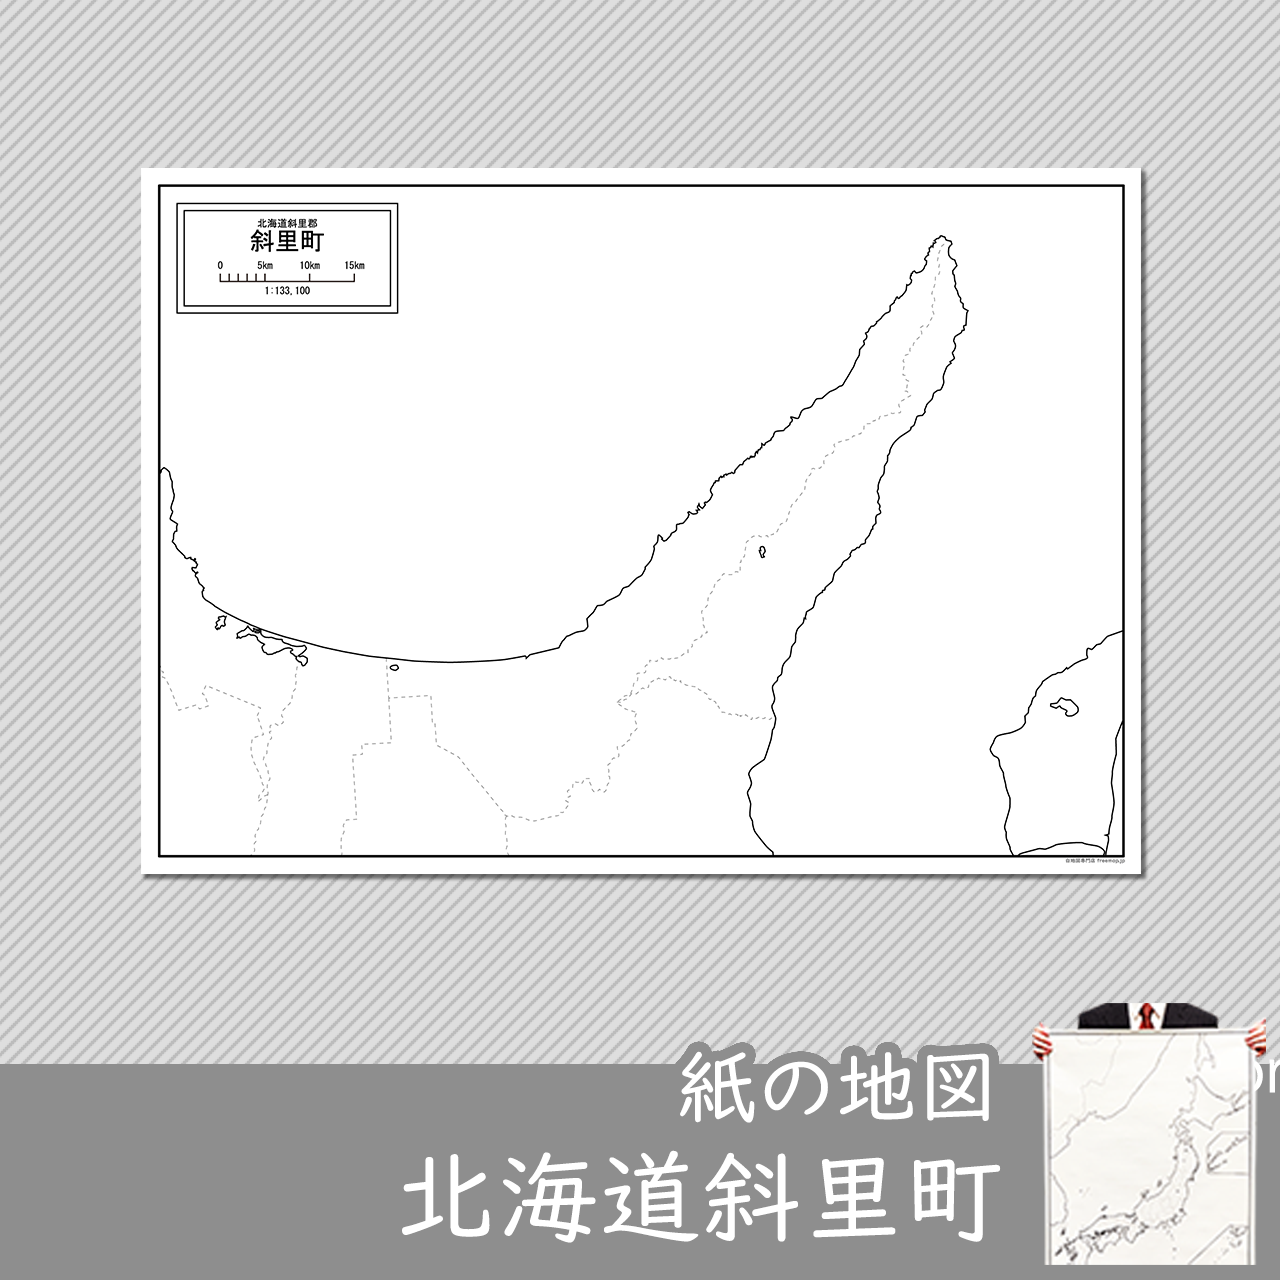 斜里町の紙の白地図のサムネイル